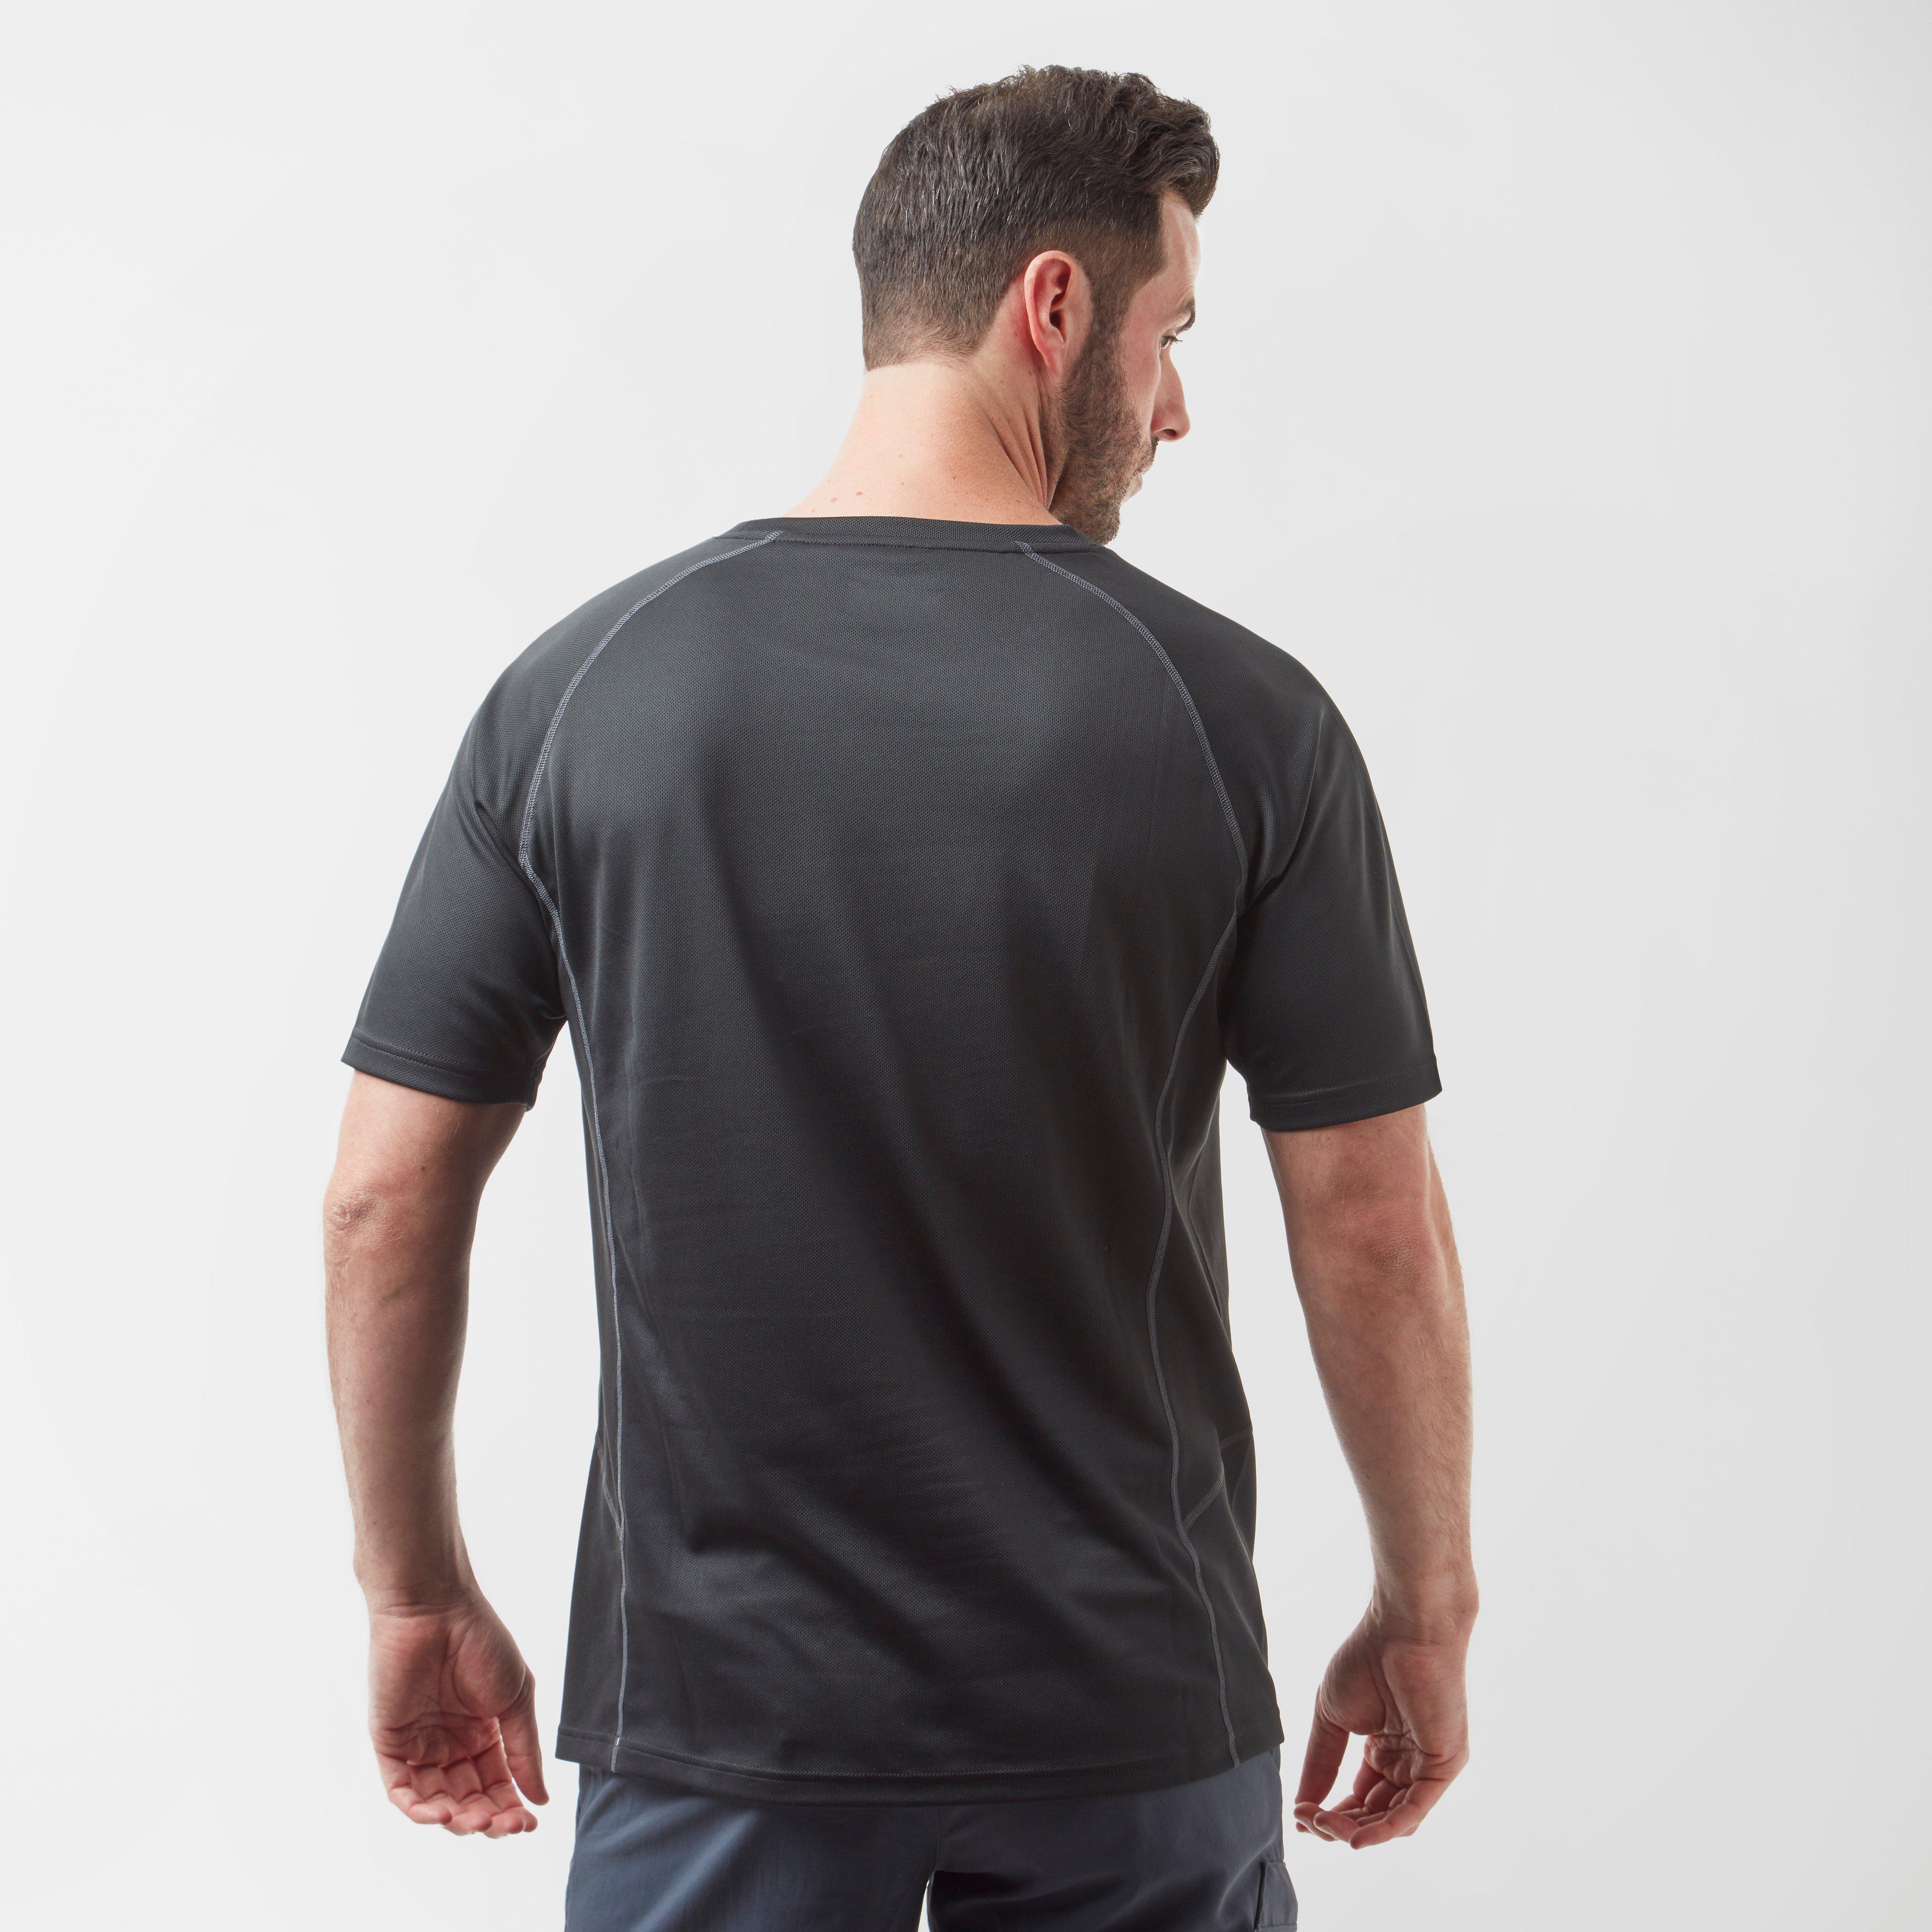 Berghaus Men's Explorer Short Sleeve Tech T-Shirt Review